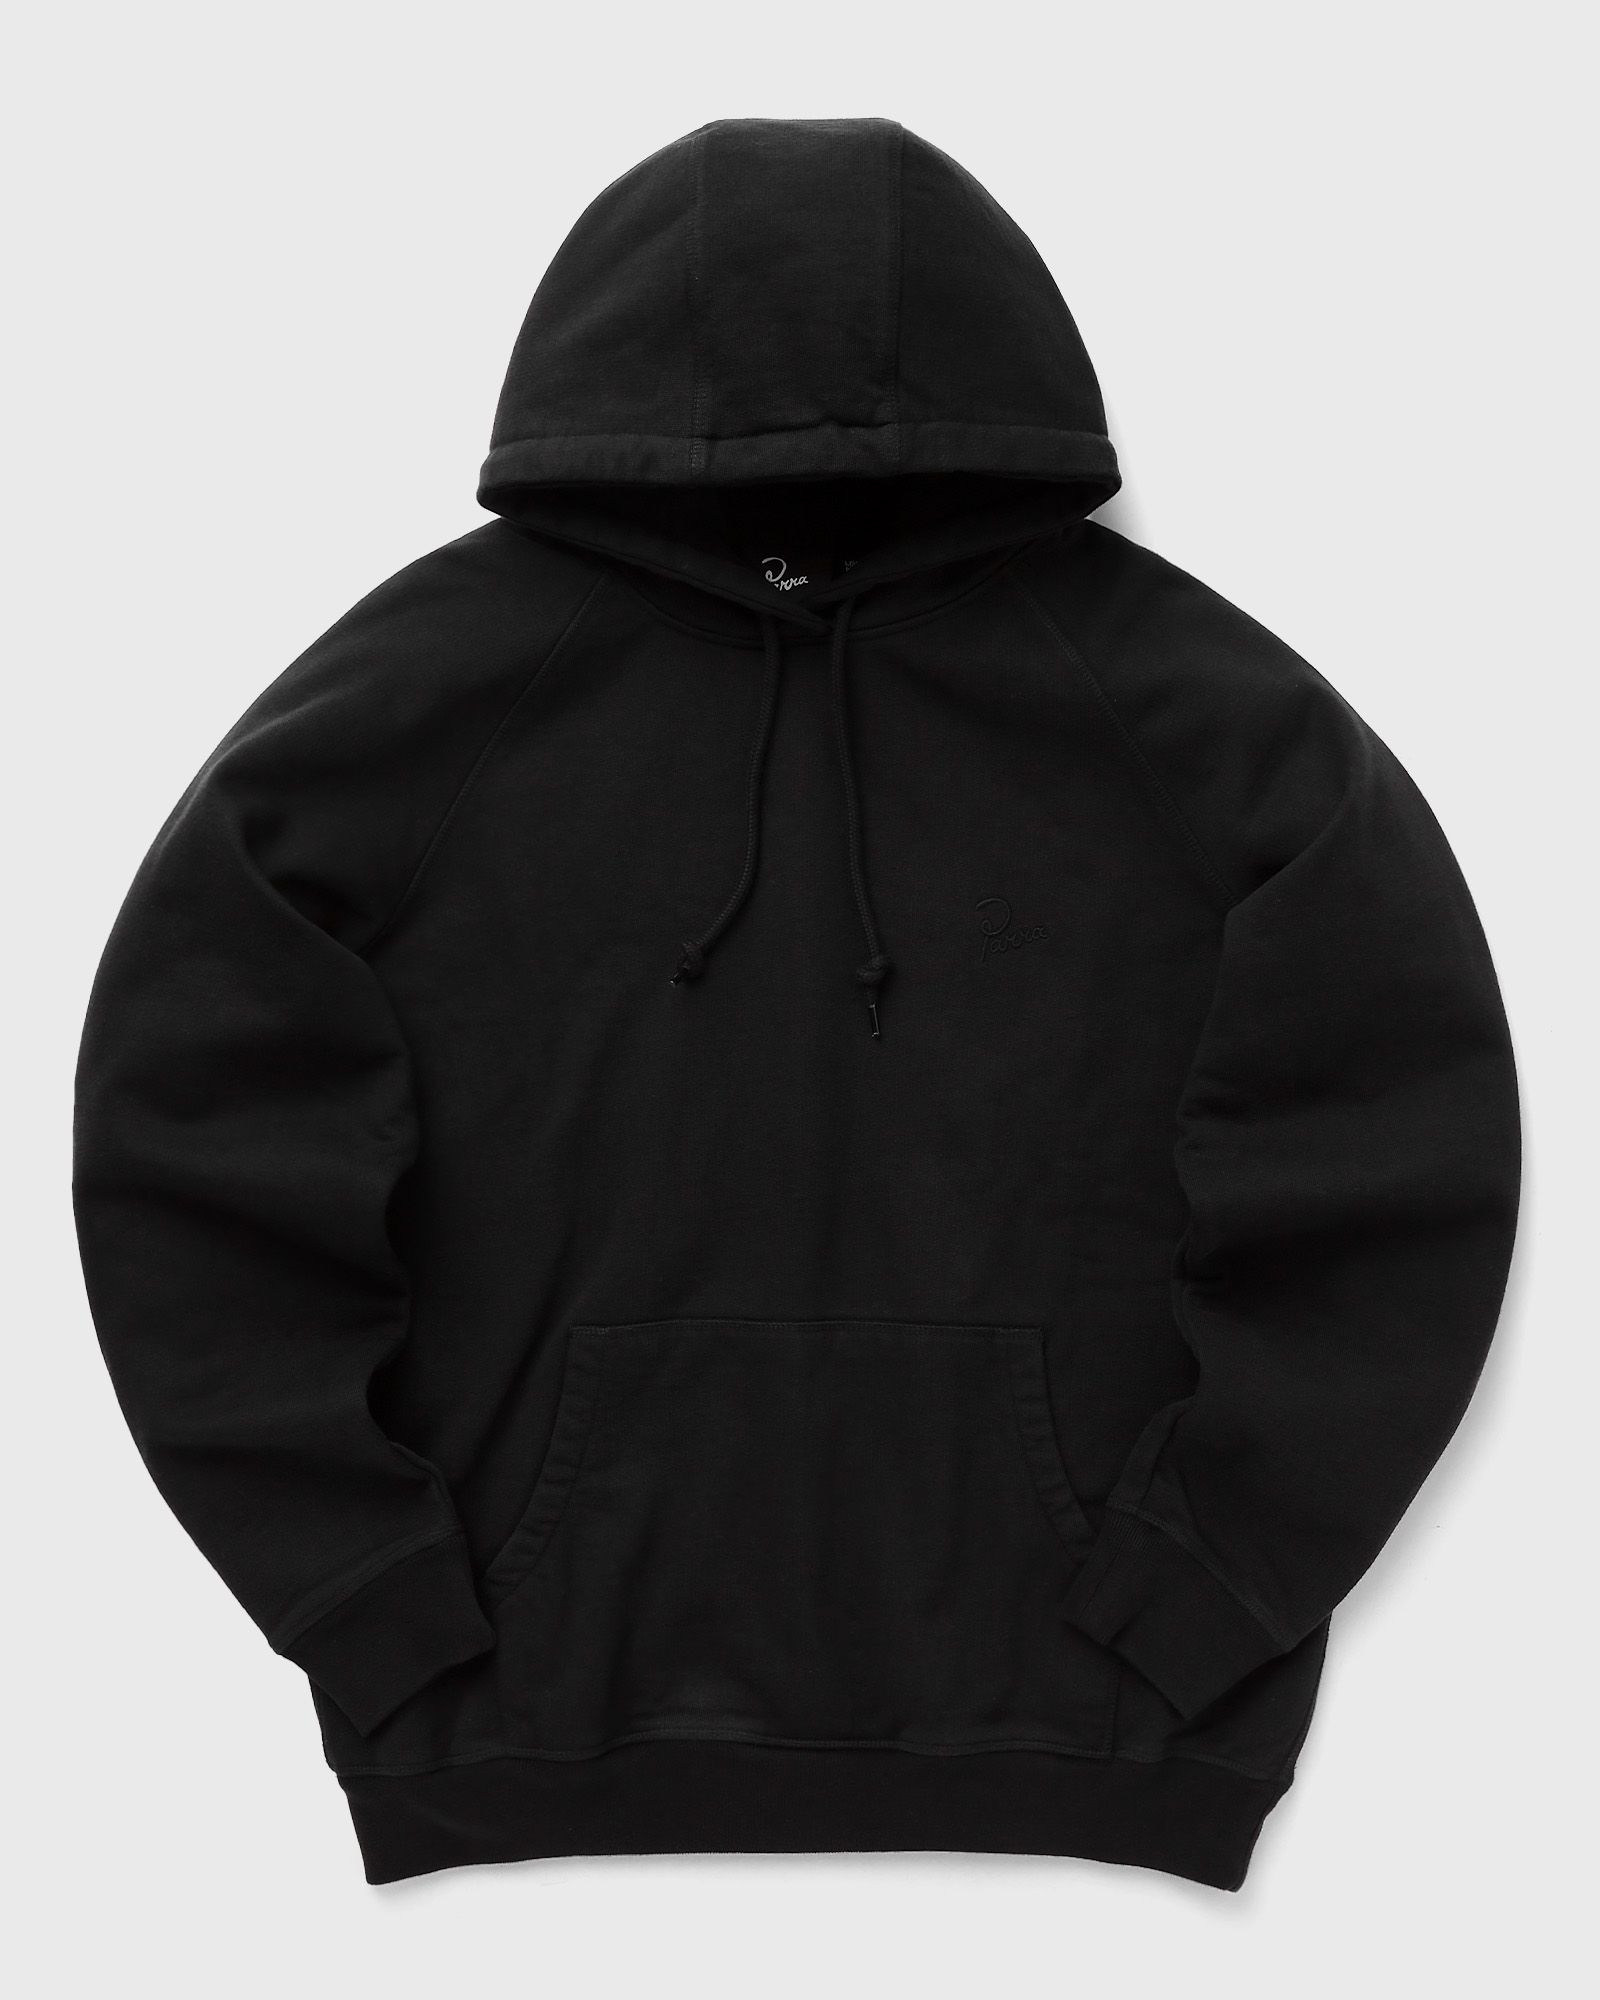 By Parra - script logo hooded sweatshirt men hoodies black in größe:m